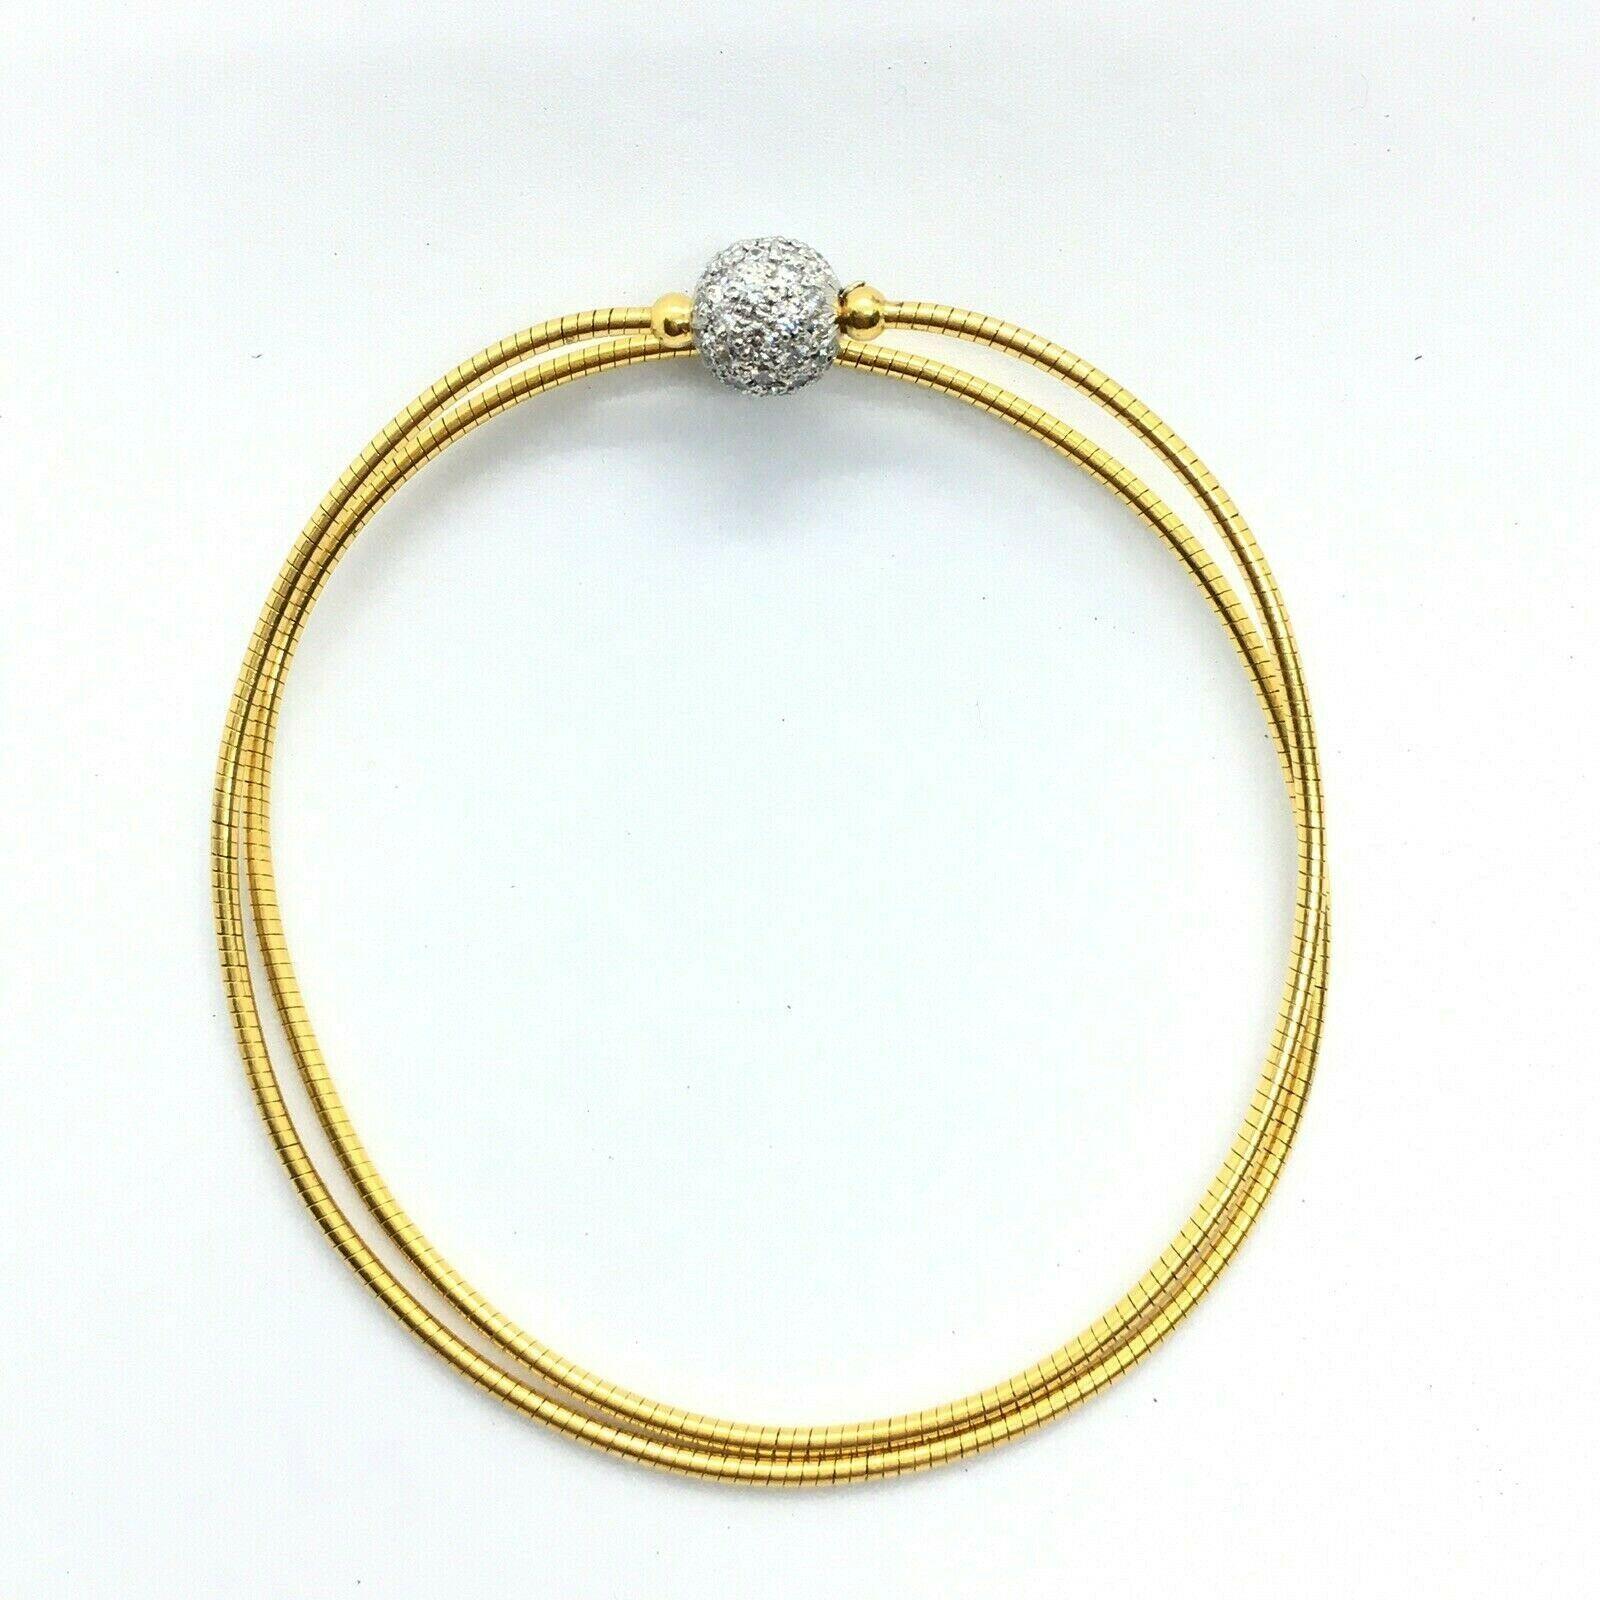 Tiffany & Co Hardwear Ball Anhänger Halskette Armband 
Markiert 18K & Platin 
1 TCW Pave' gefasster Diamant 
Keine Beulen, keine Schäden, keine Anzeichen von Reparaturen, siehe Bilder
Gestempelt 